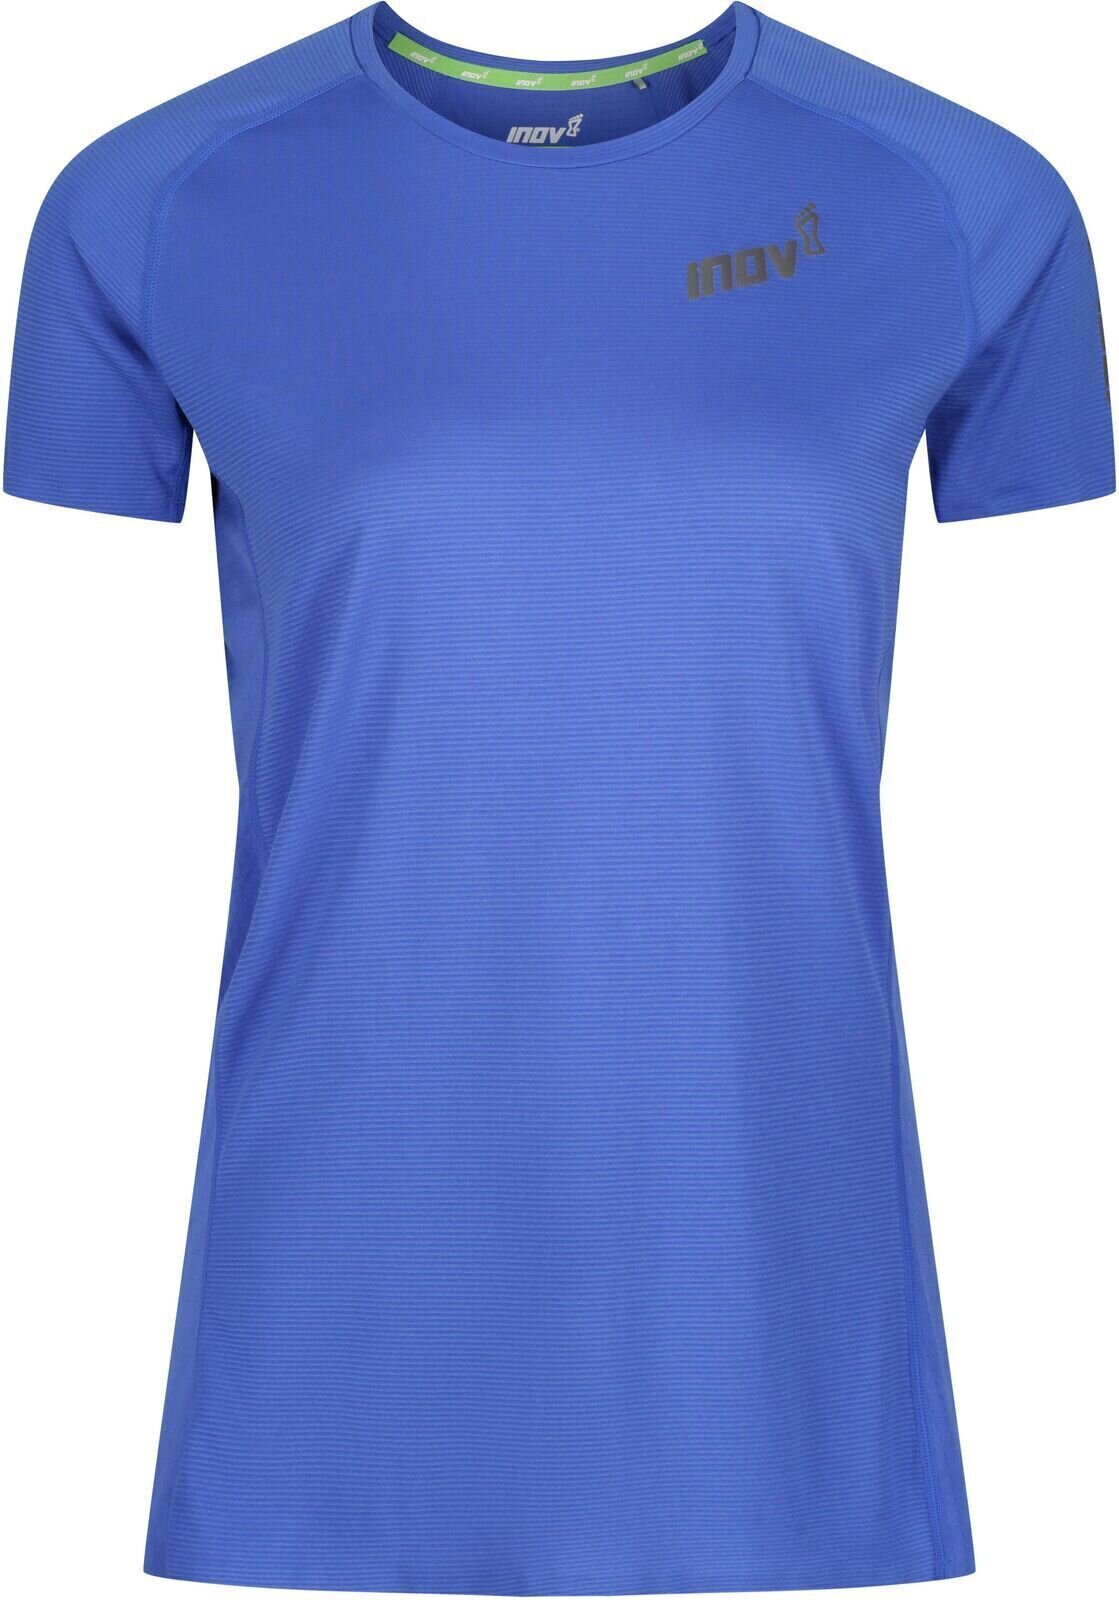 Koszulka do biegania z krótkim rękawem
 Inov-8 Baso Elite Blue 34 Koszulka do biegania z krótkim rękawem